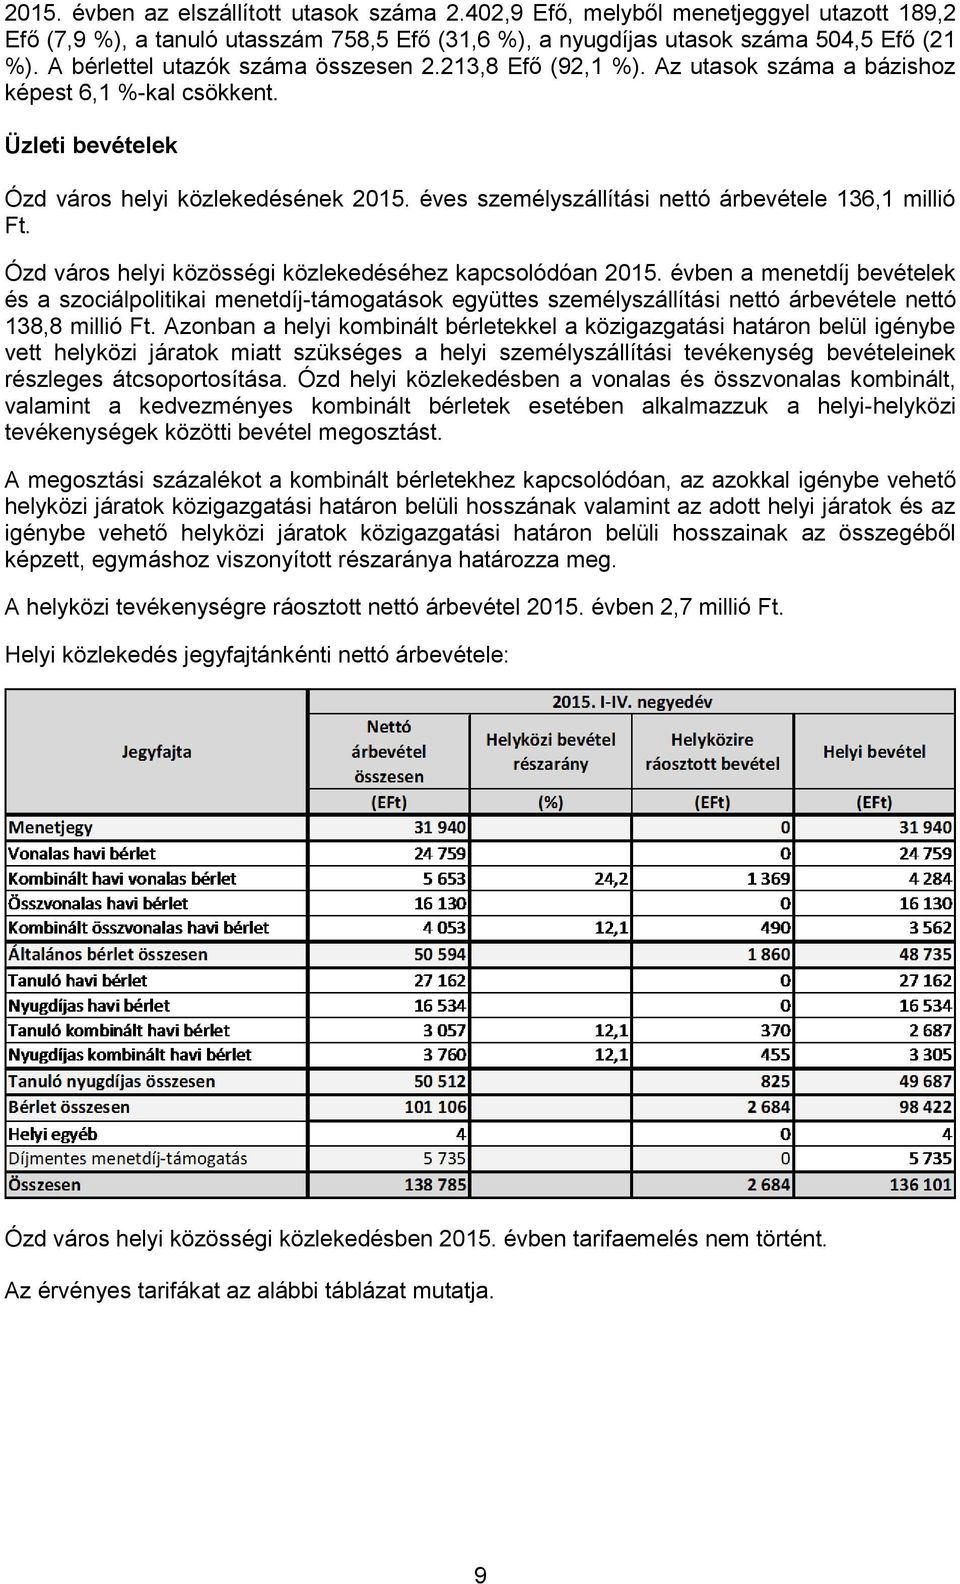 éves személyszállítási nettó árbevétele 136,1 millió Ft. Ózd város helyi közösségi közlekedéséhez kapcsolódóan 2015.